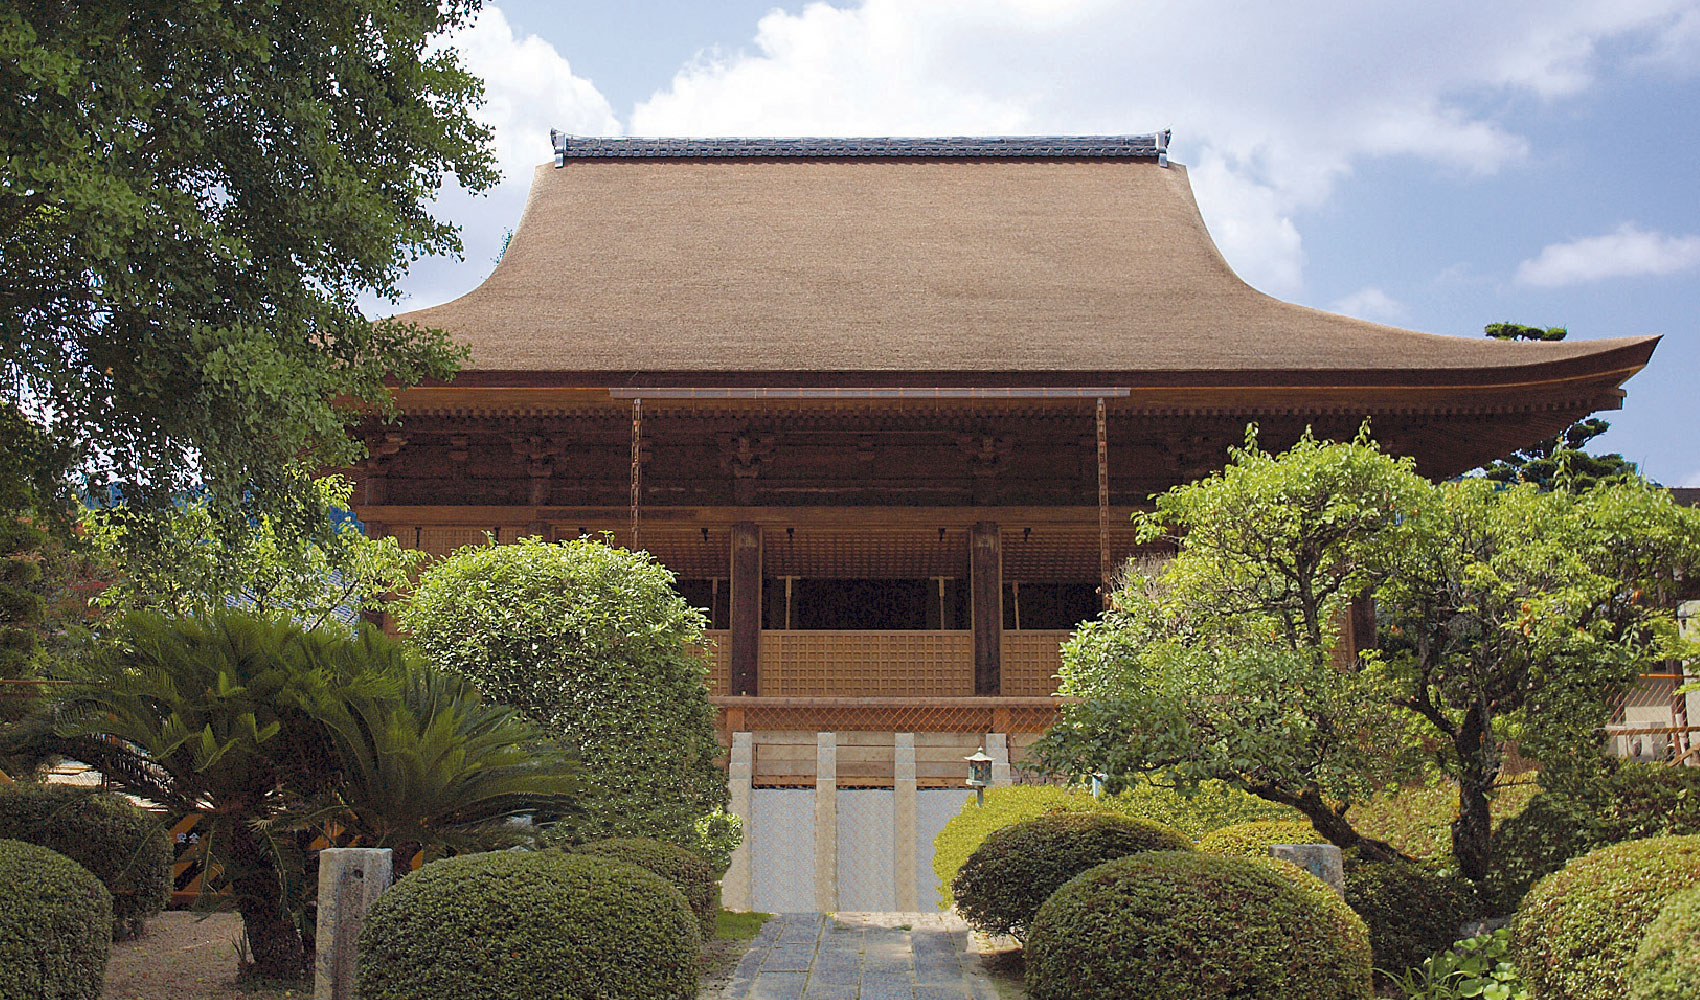 Ryufukuji Temple